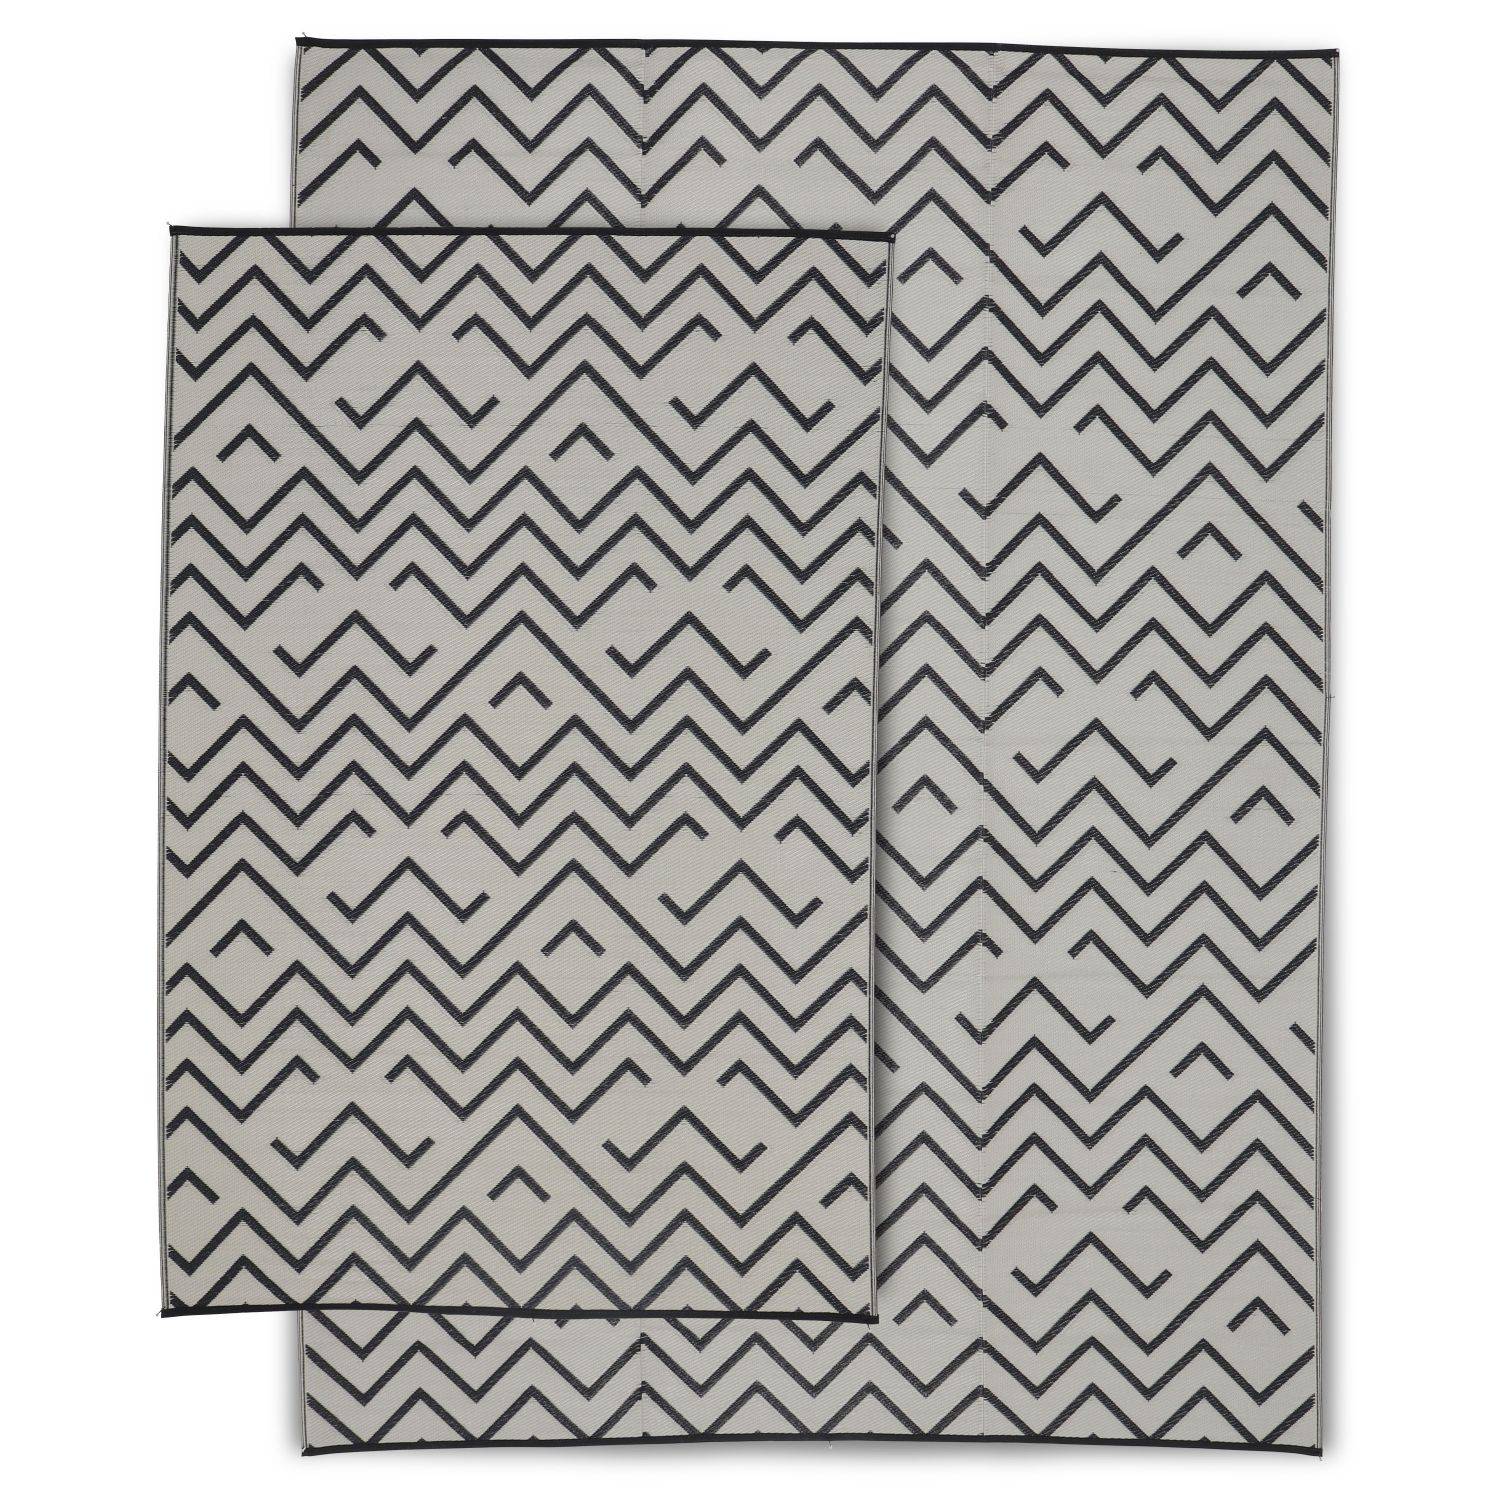 Tapis d’extérieur 180x270cm SYDNEY - Rectangulaire, motif vagues noir / beige, jacquard, réversible, indoor / outdoor Photo5